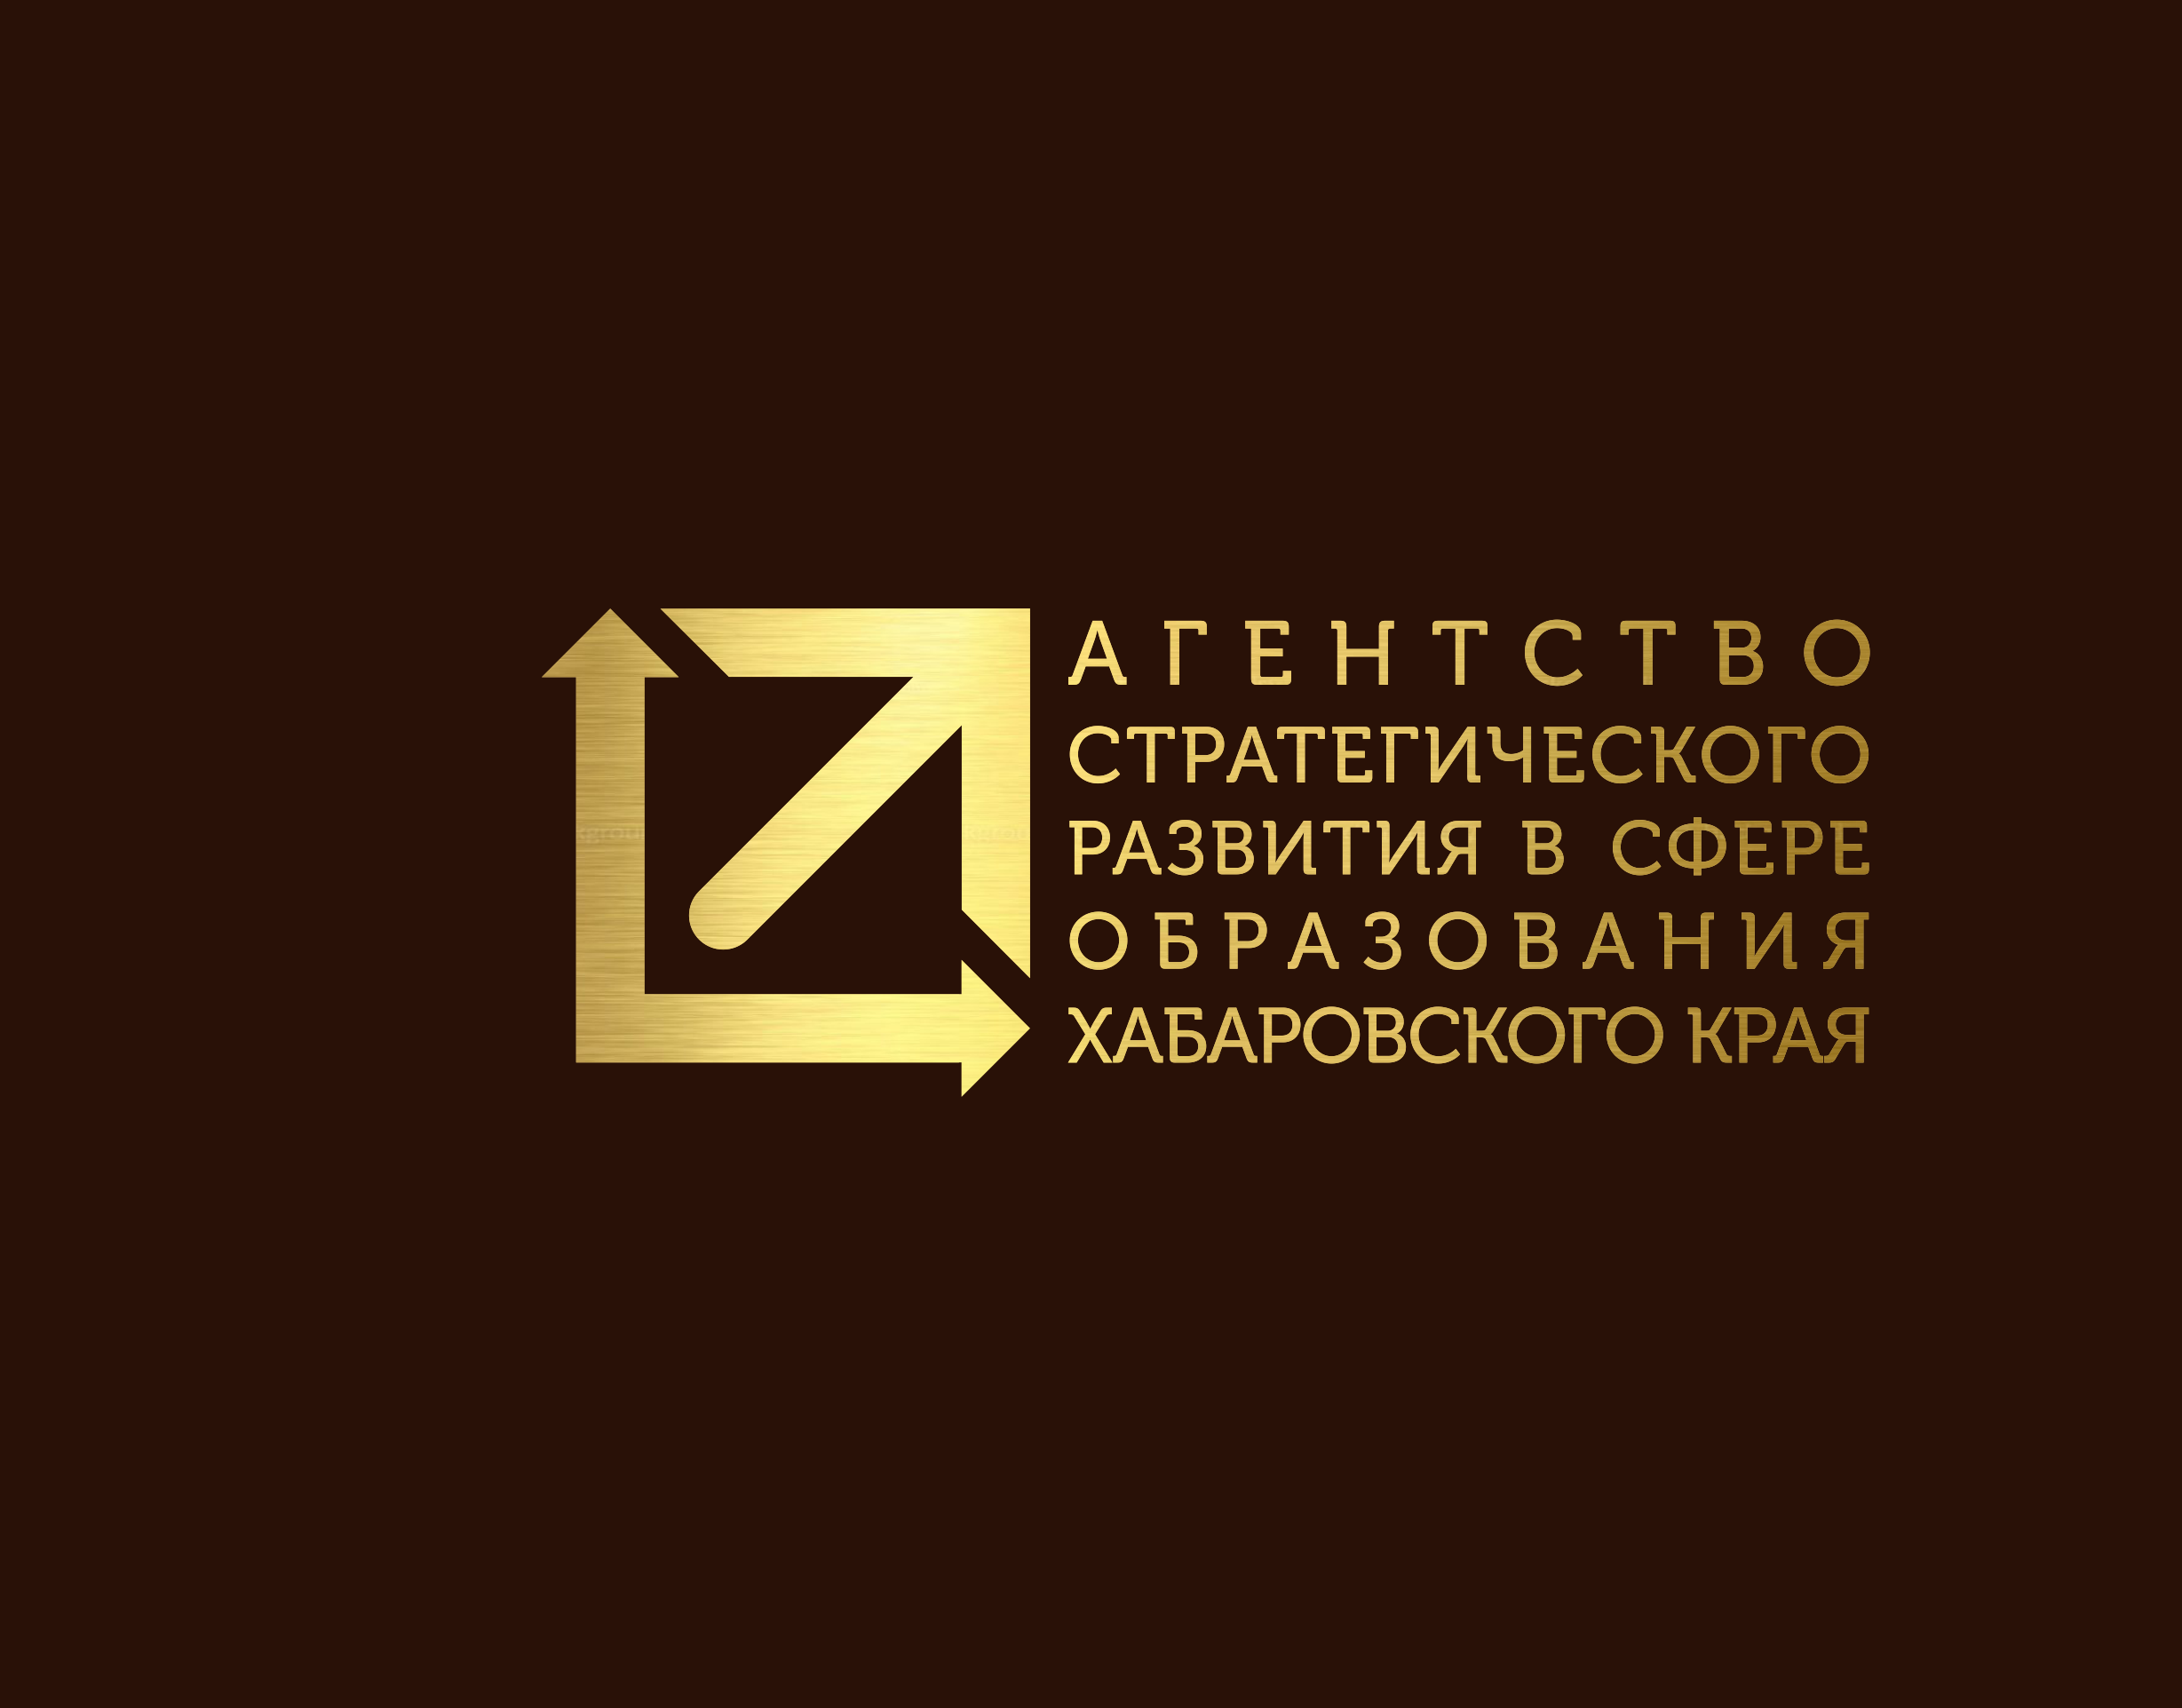 Сайт иро хабаровск. Агентство стратегического развития. Центр агентство стратегического развития логотип.